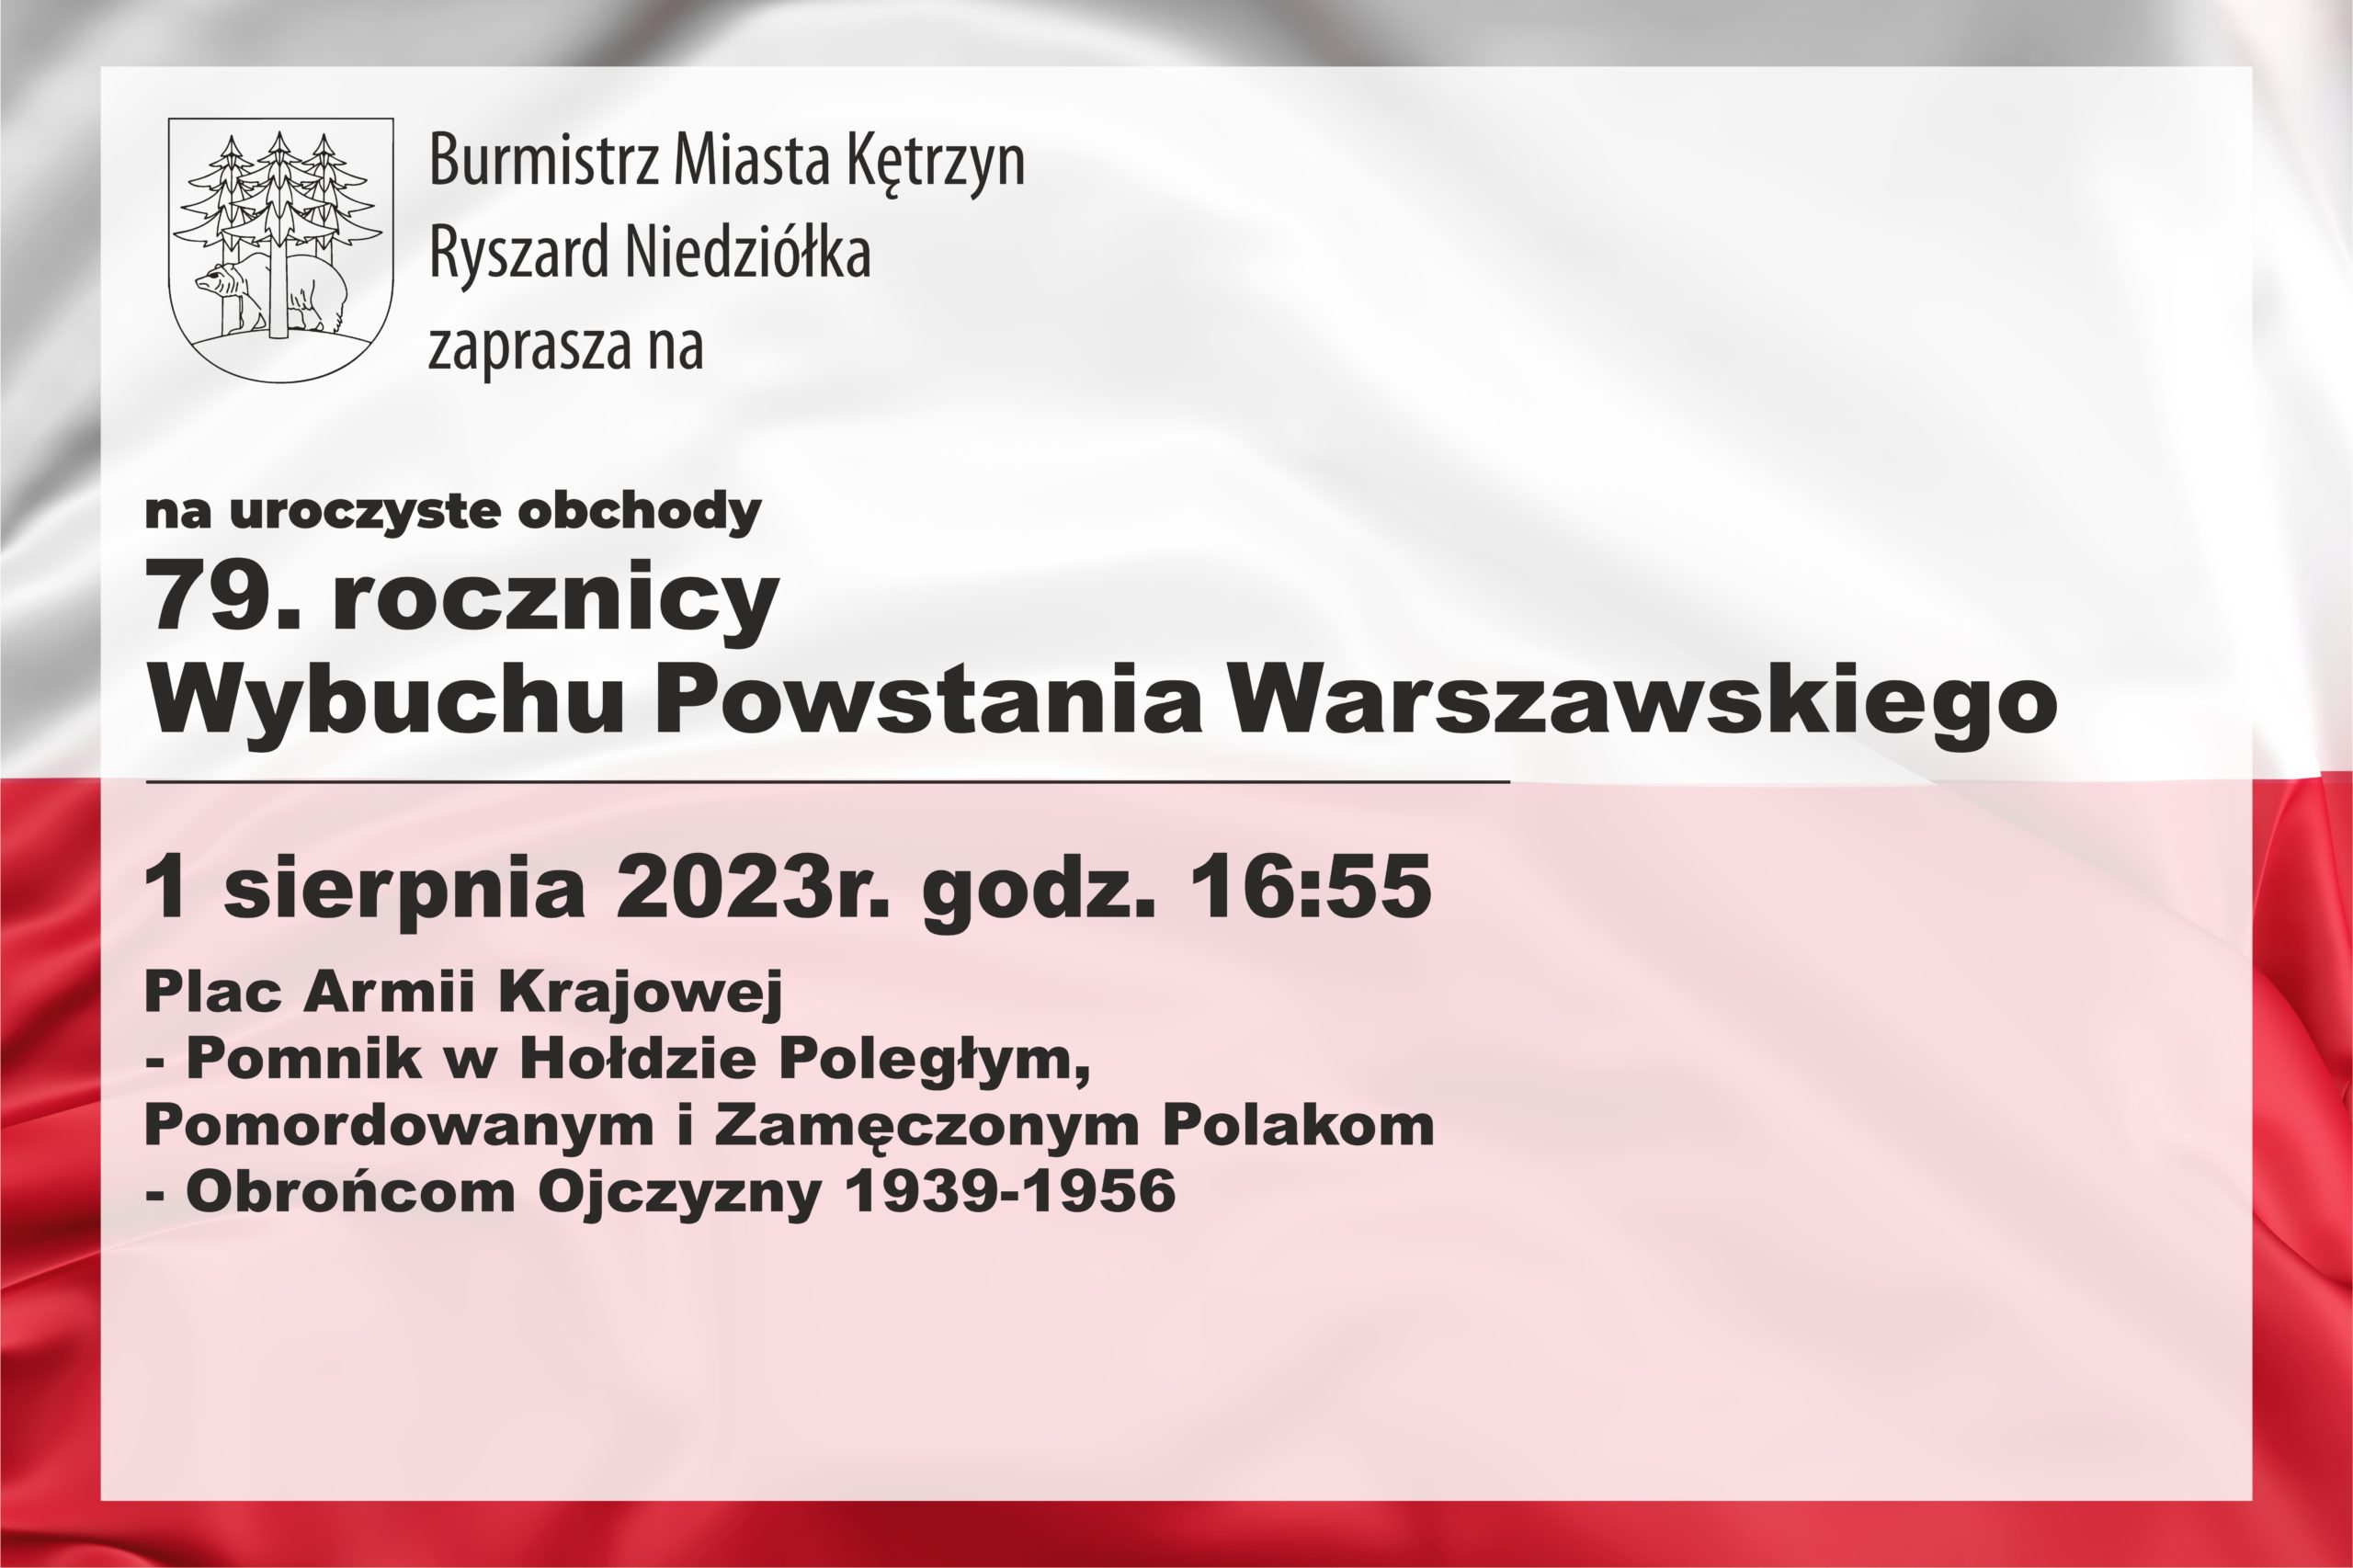 1 sierpnia 2023 zapraszamy na obchody 79. rocznicy Wybuchu Powstania Warszawskiego, które odbędą się przy Pomniku w Hołdzie Poległym, Pomordowanym i Zamęczonym Polakom - Obrońcom Ojczyzny 1939-1956 o godz. 16:55